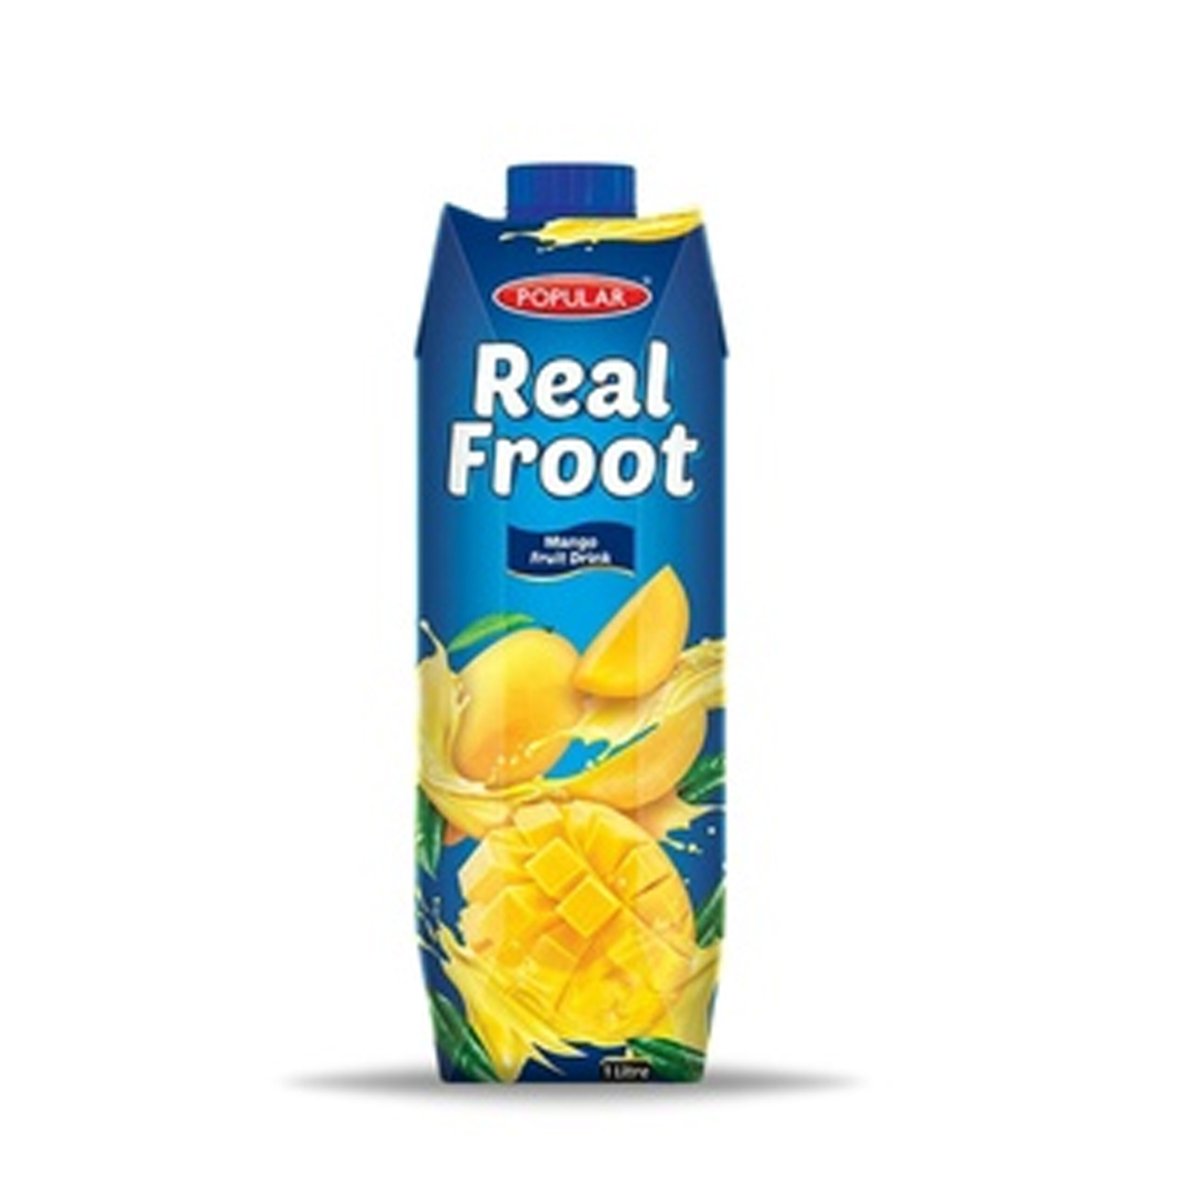 Popular Real Froot Mango Juice 1Liter